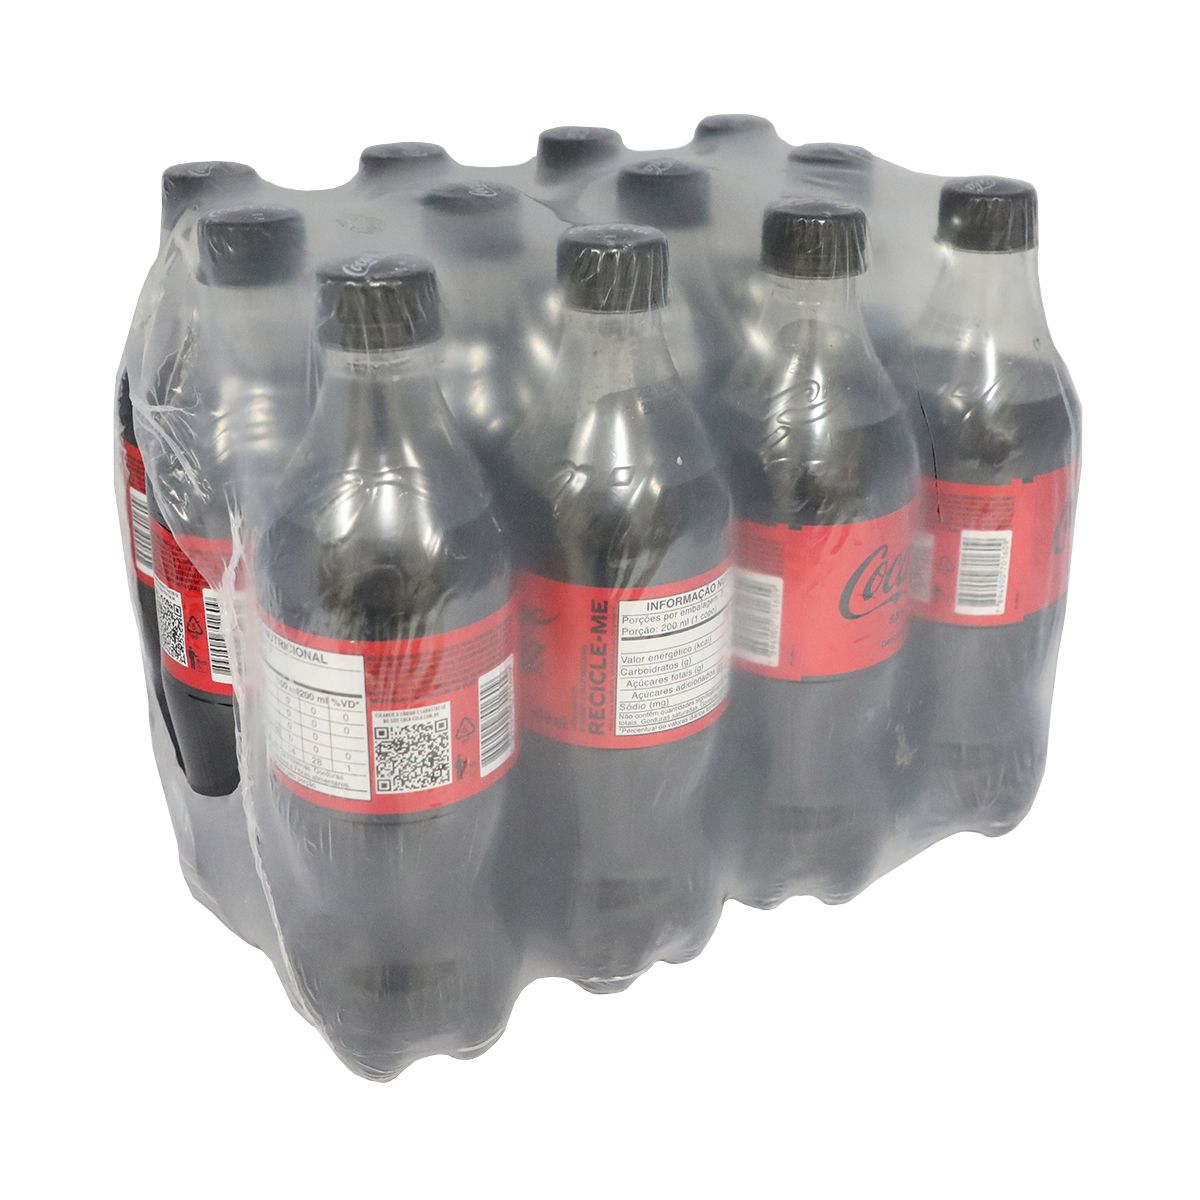 Refrigerante Coca-Cola Sem Açúcar 600ml (Fardo com 12 und)